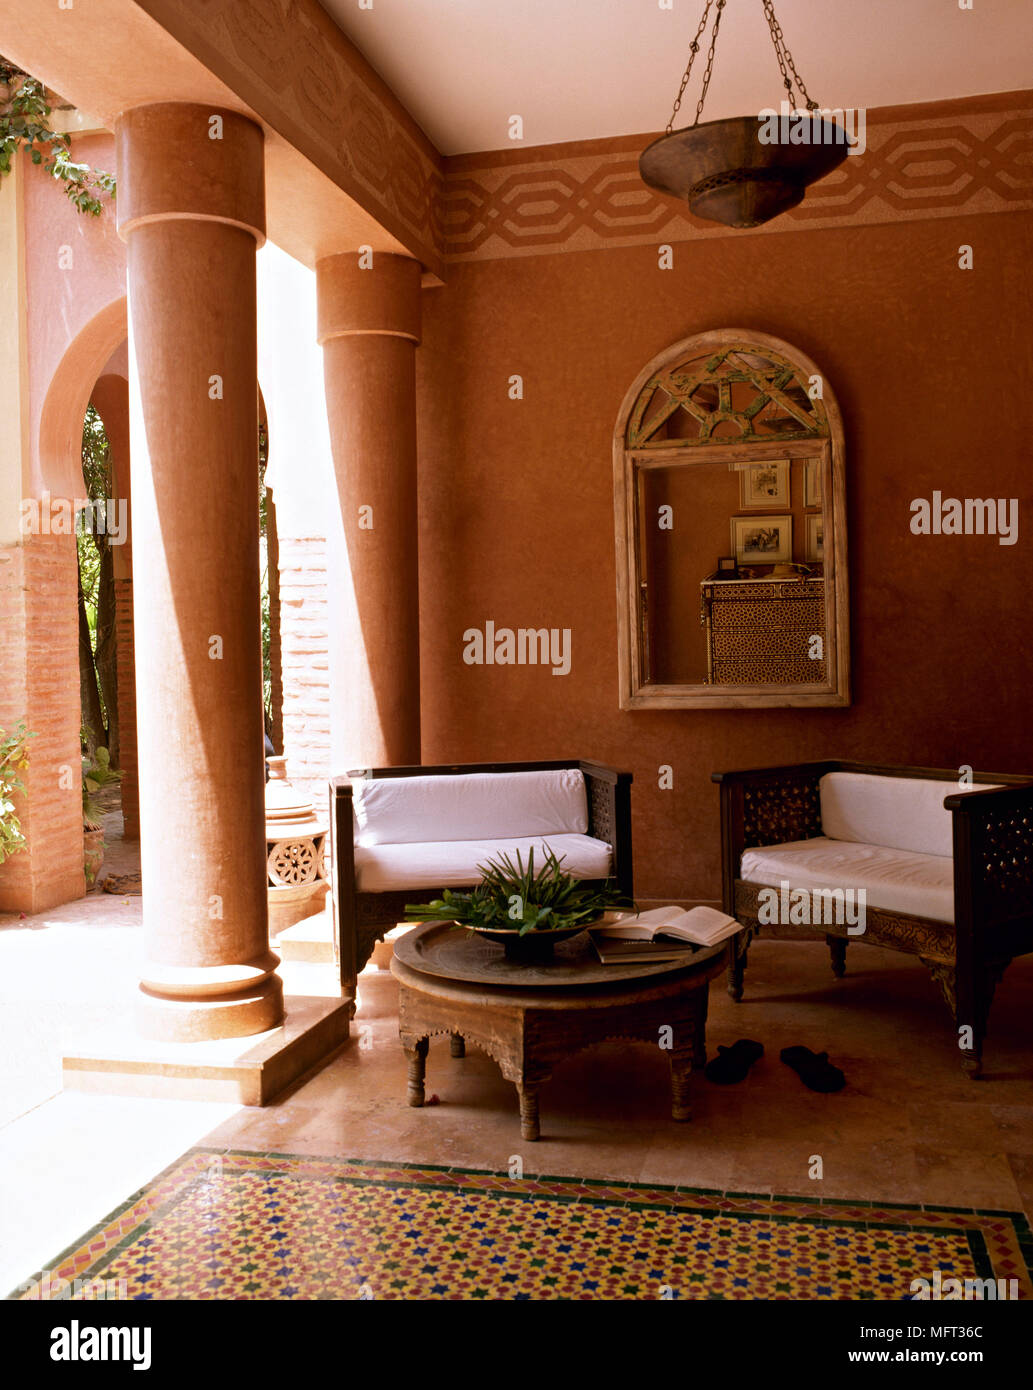 Salon de l'hôtel marocain intérieurs chambres hôtels coin piliers mauresque arabe Banque D'Images